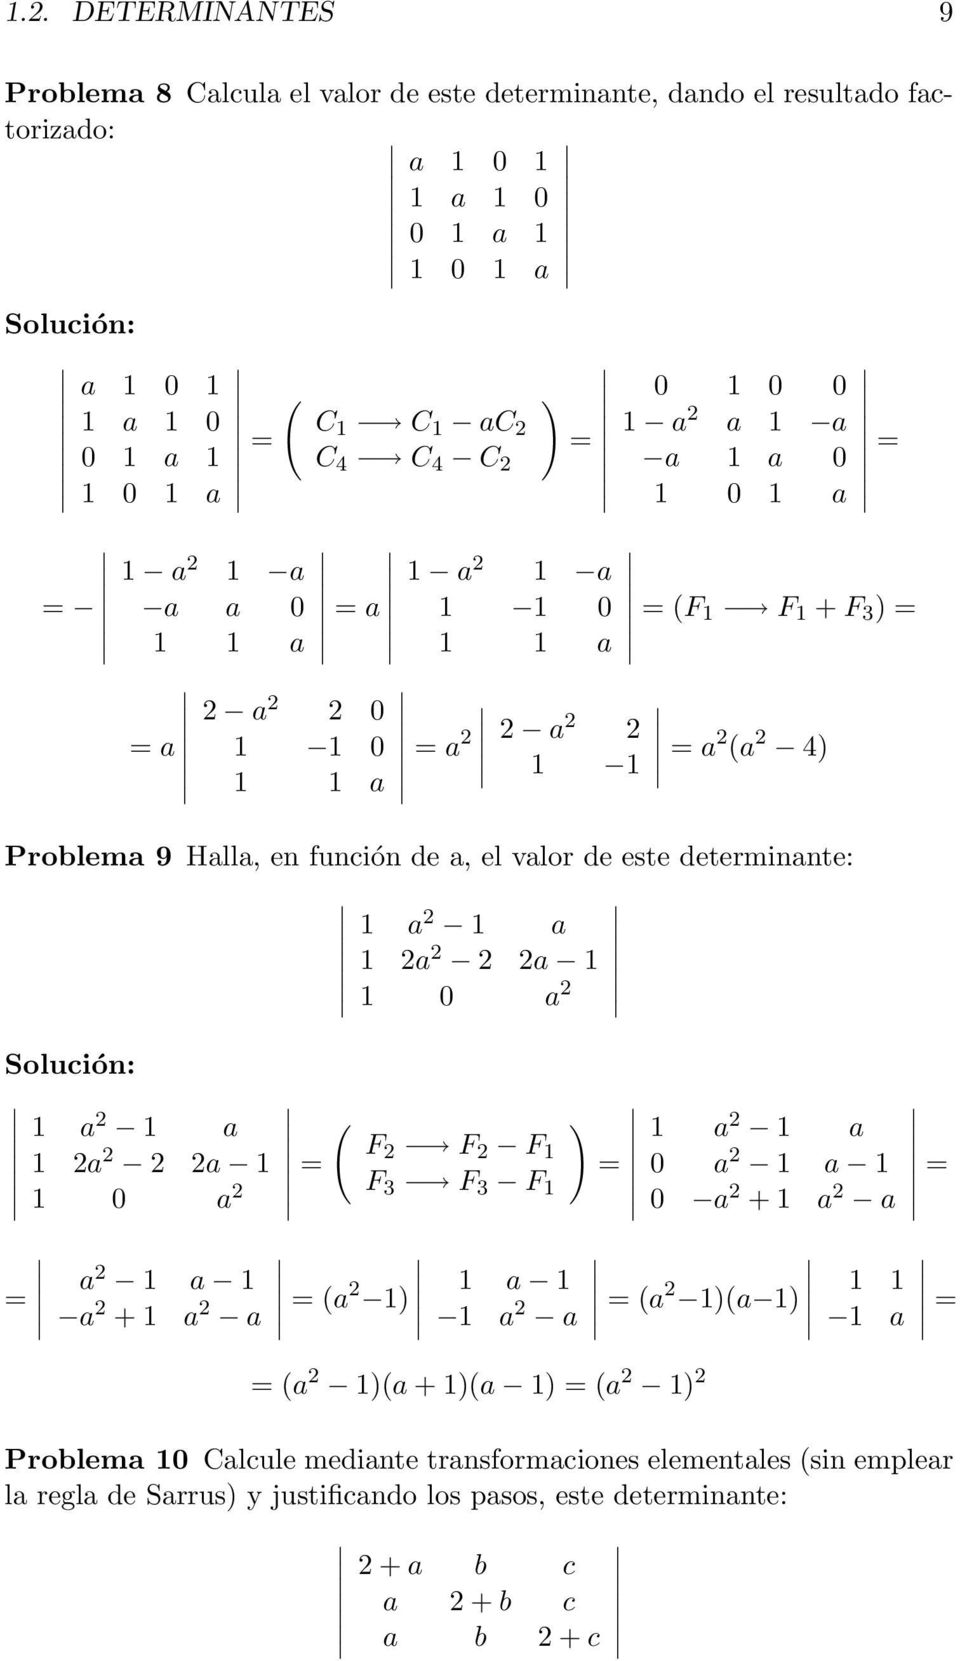 valor de este determinante: 1 a 1 a 1 a a 1 1 0 a 1 a 1 a 1 a F F a 1 = F 1 1 0 a F 3 F 3 F 1 ) = 1 a 1 a 0 a 1 a 1 0 a + 1 a a = = a 1 a 1 a + 1 a a = a 1) 1 a 1 1 a a = a 1)a 1) = a